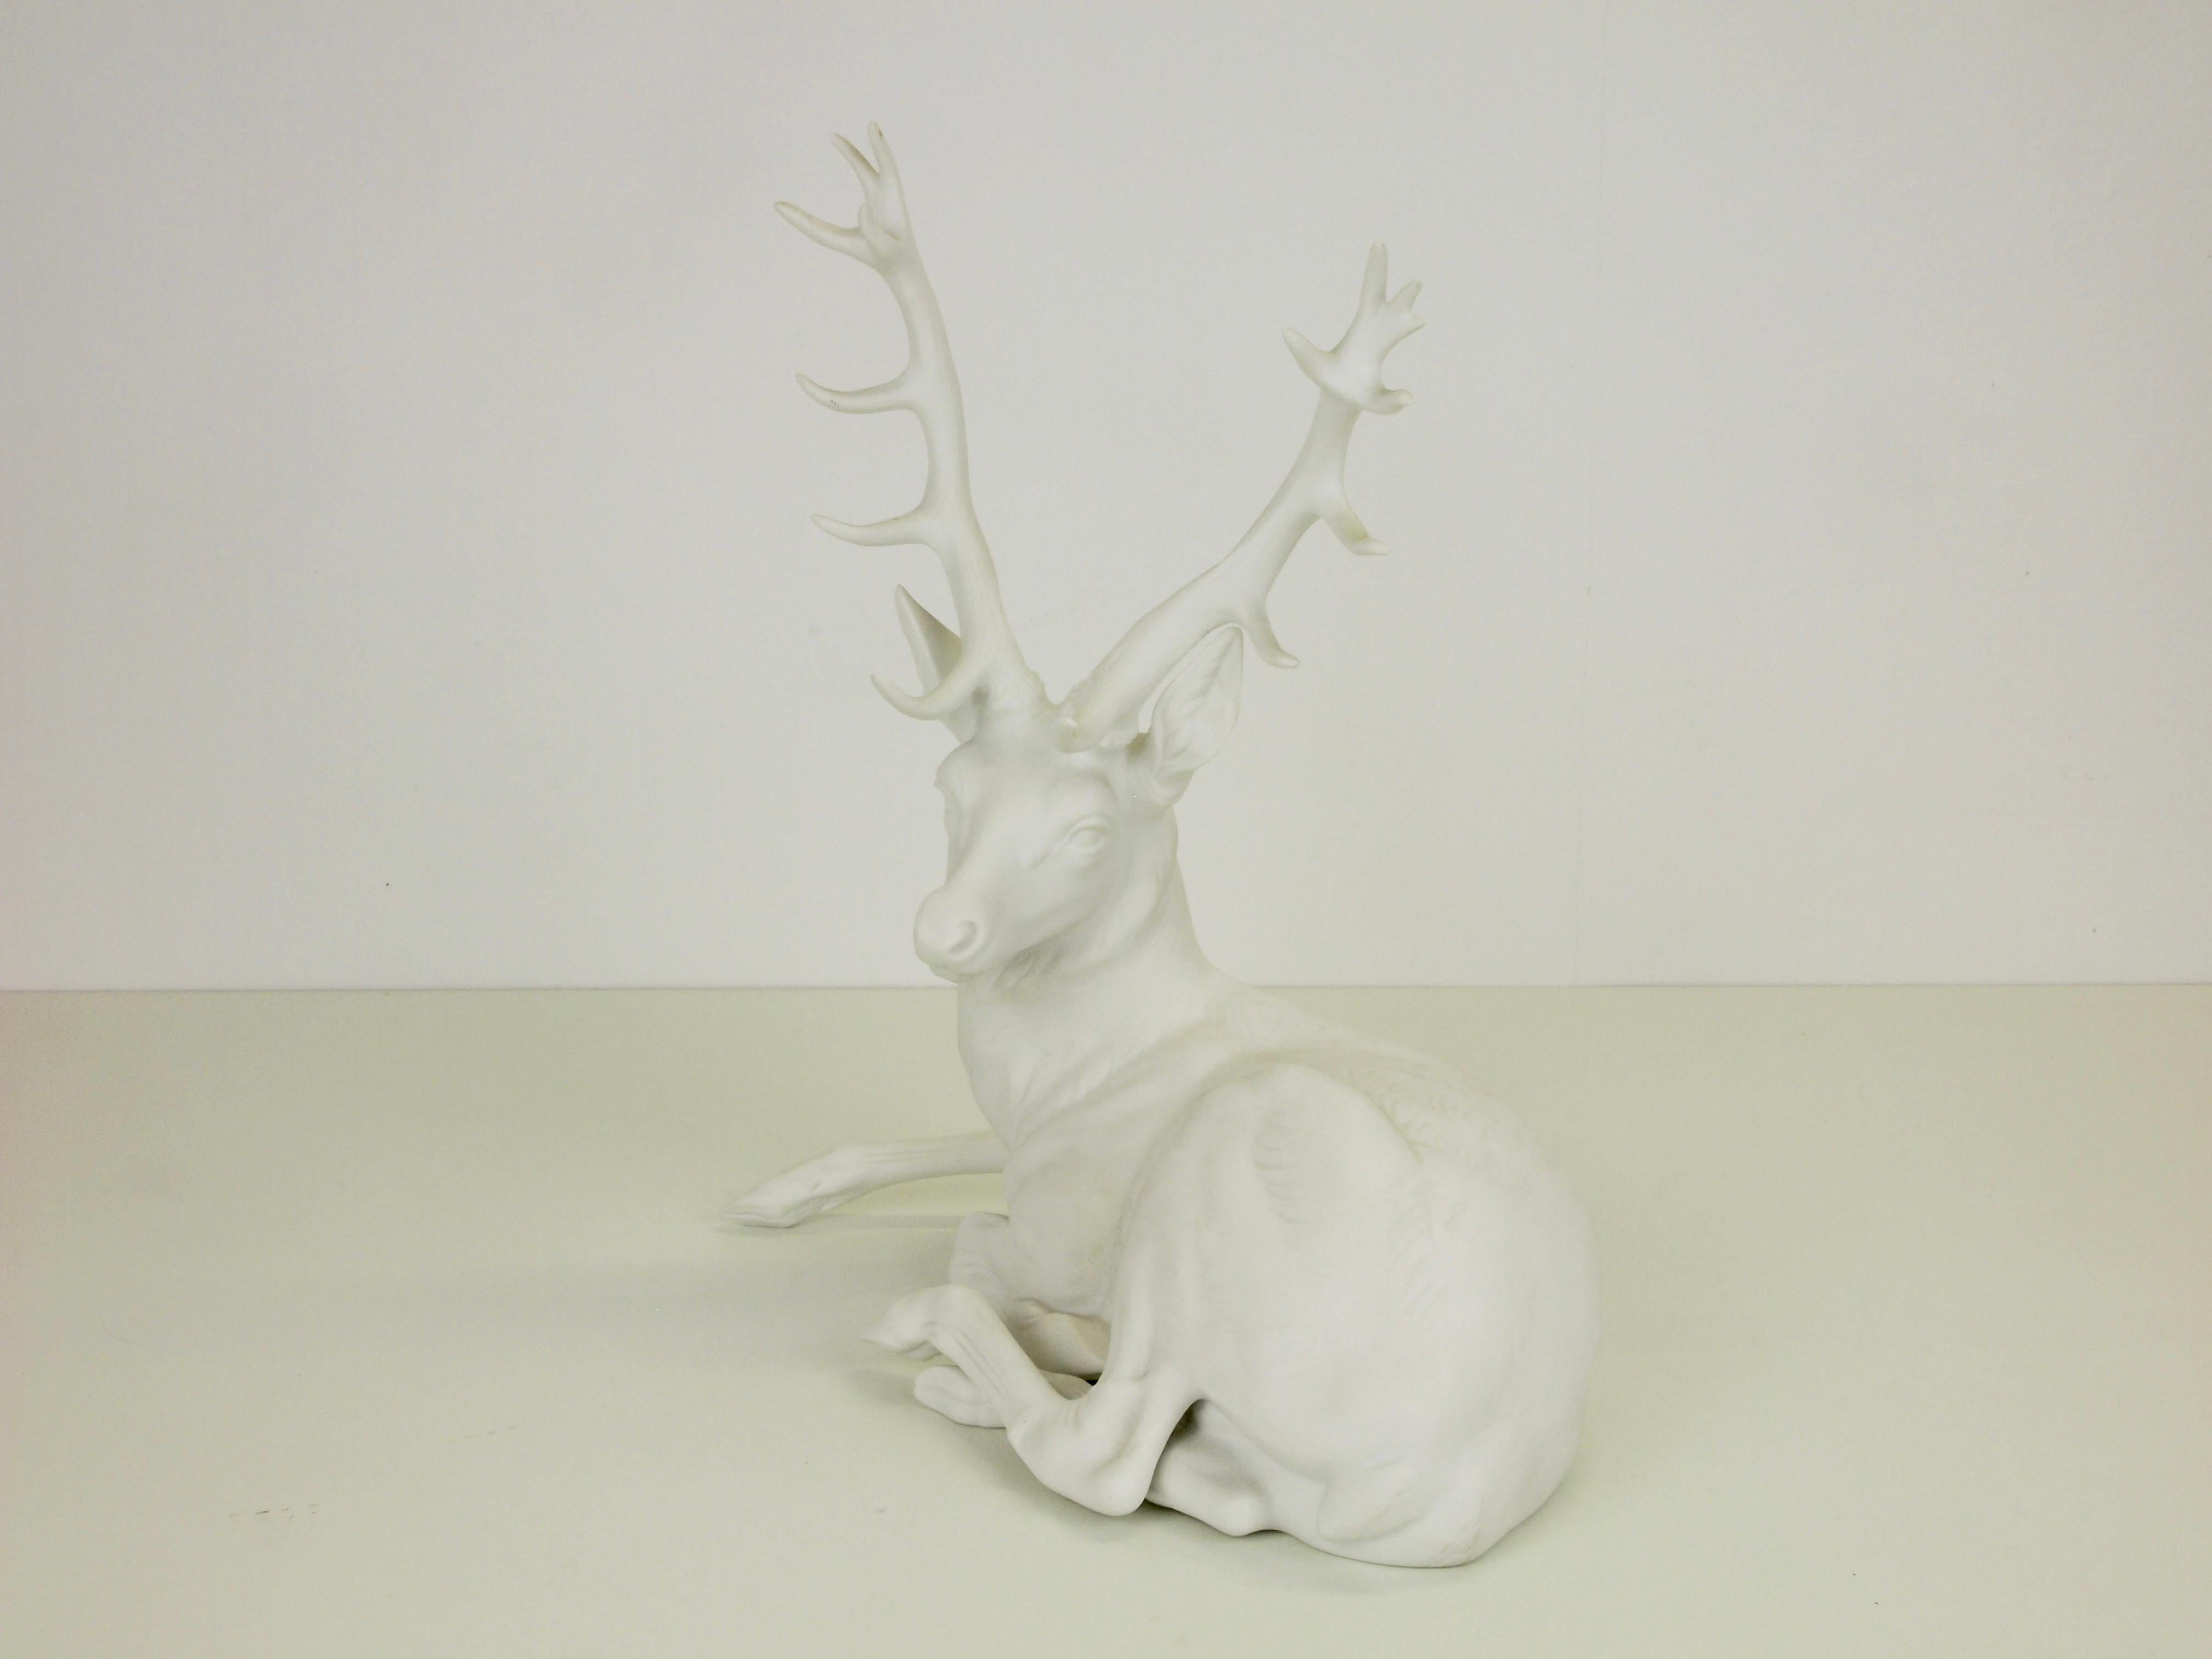 Nymphenburg Porcelain Figurine Depicting a Red Deer 3